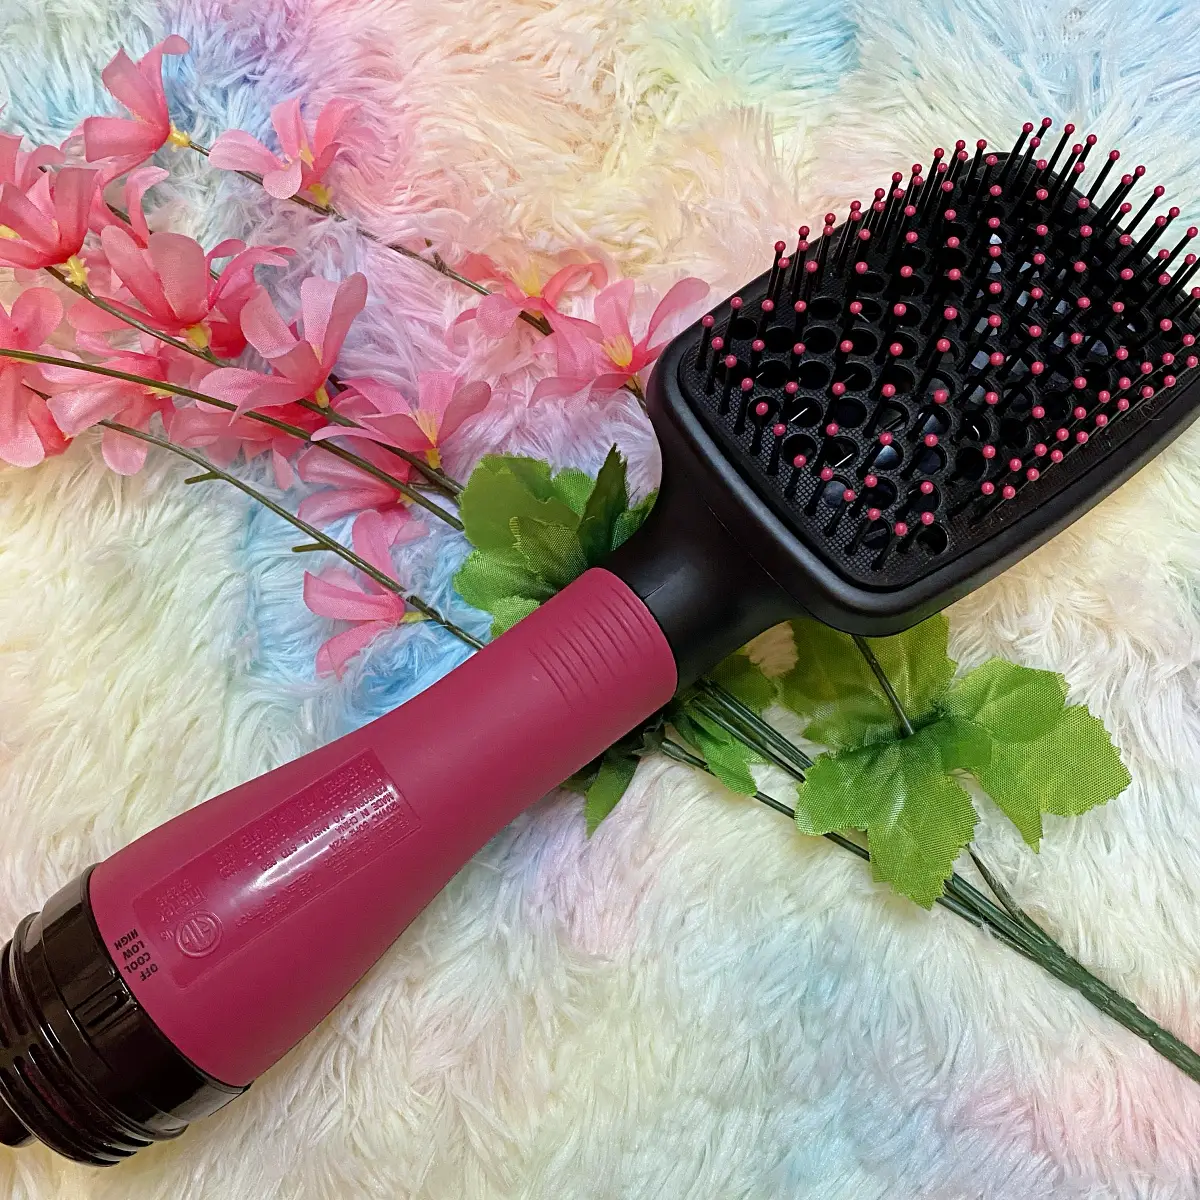 Here's why we love Revlon's Blow-Drying Hot Brush